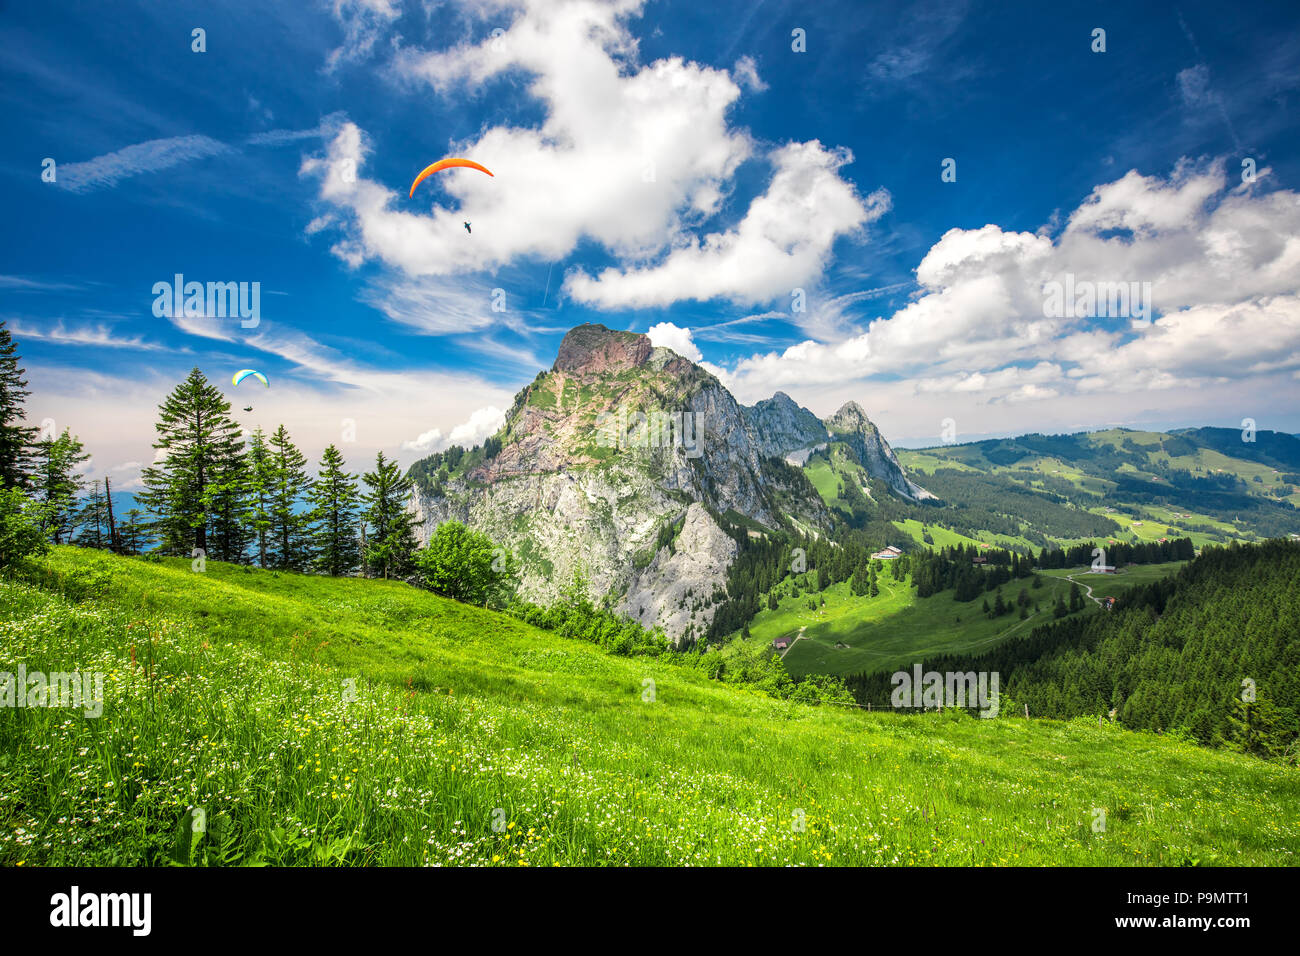 Bella estate paesaggio della Svizzera con Grosser Mythen montagna, parapendii e prati verdi, Ibergeregg, Svizzera, Europa. Foto Stock